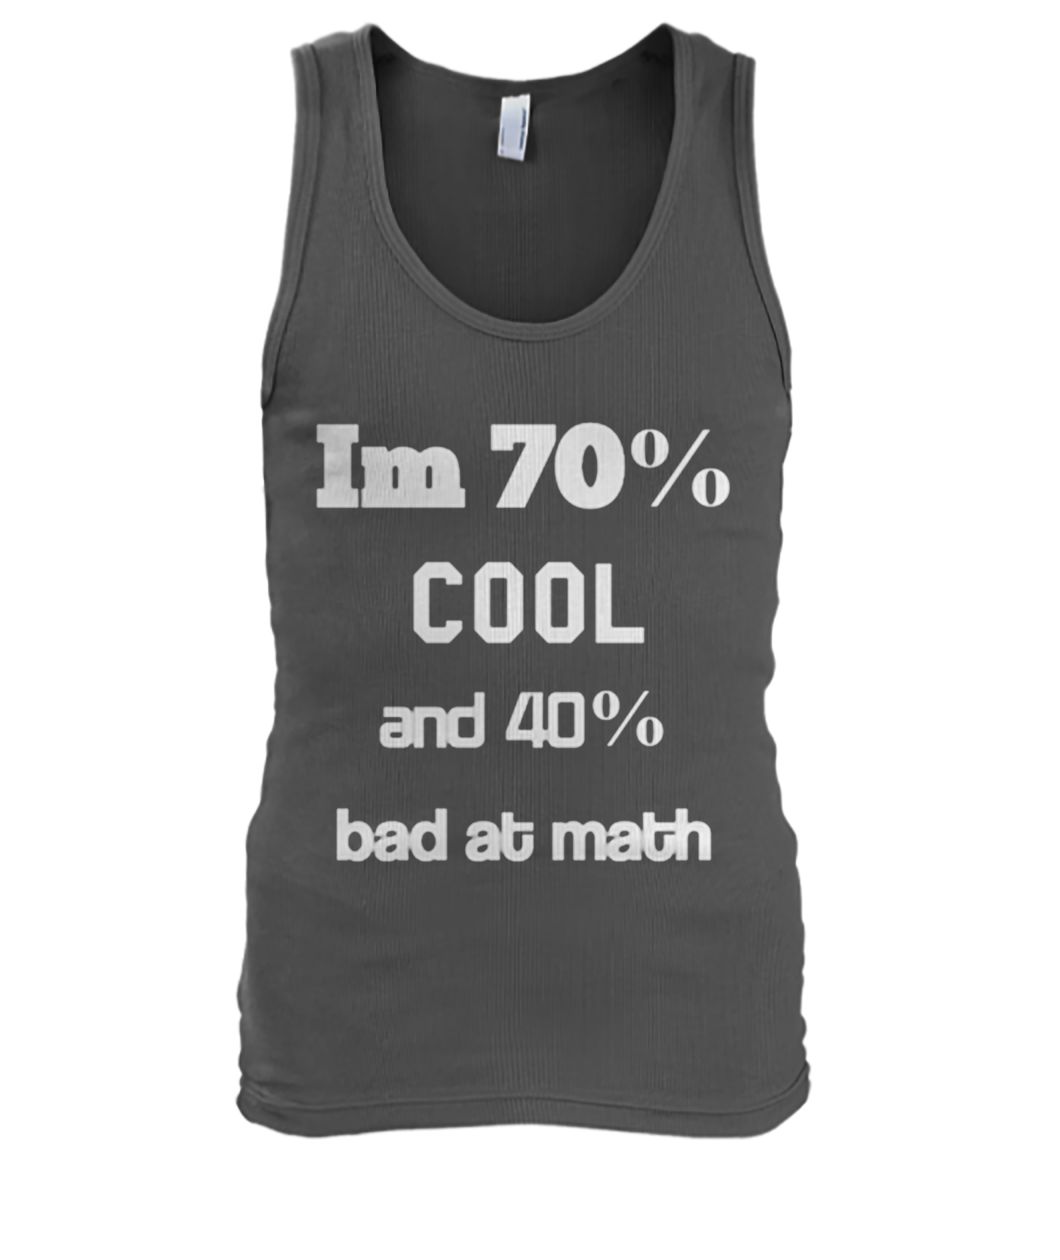 I'm 70% cool and 40% bad at math men's tank top